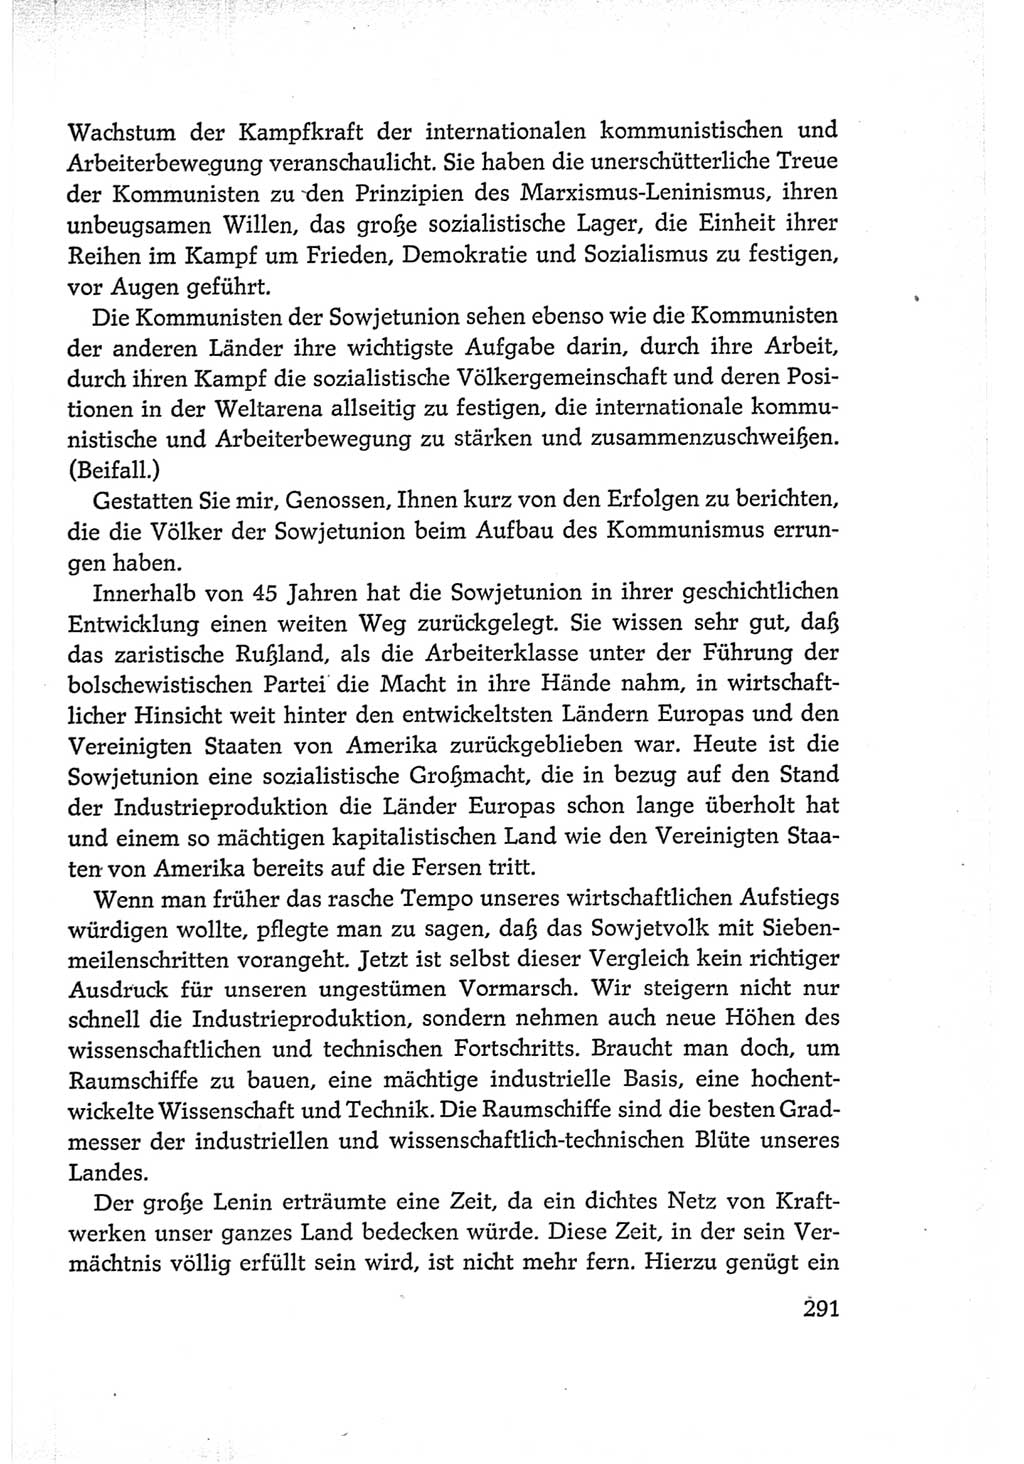 Protokoll der Verhandlungen des Ⅵ. Parteitages der Sozialistischen Einheitspartei Deutschlands (SED) [Deutsche Demokratische Republik (DDR)] 1963, Band Ⅰ, Seite 291 (Prot. Verh. Ⅵ. PT SED DDR 1963, Bd. Ⅰ, S. 291)